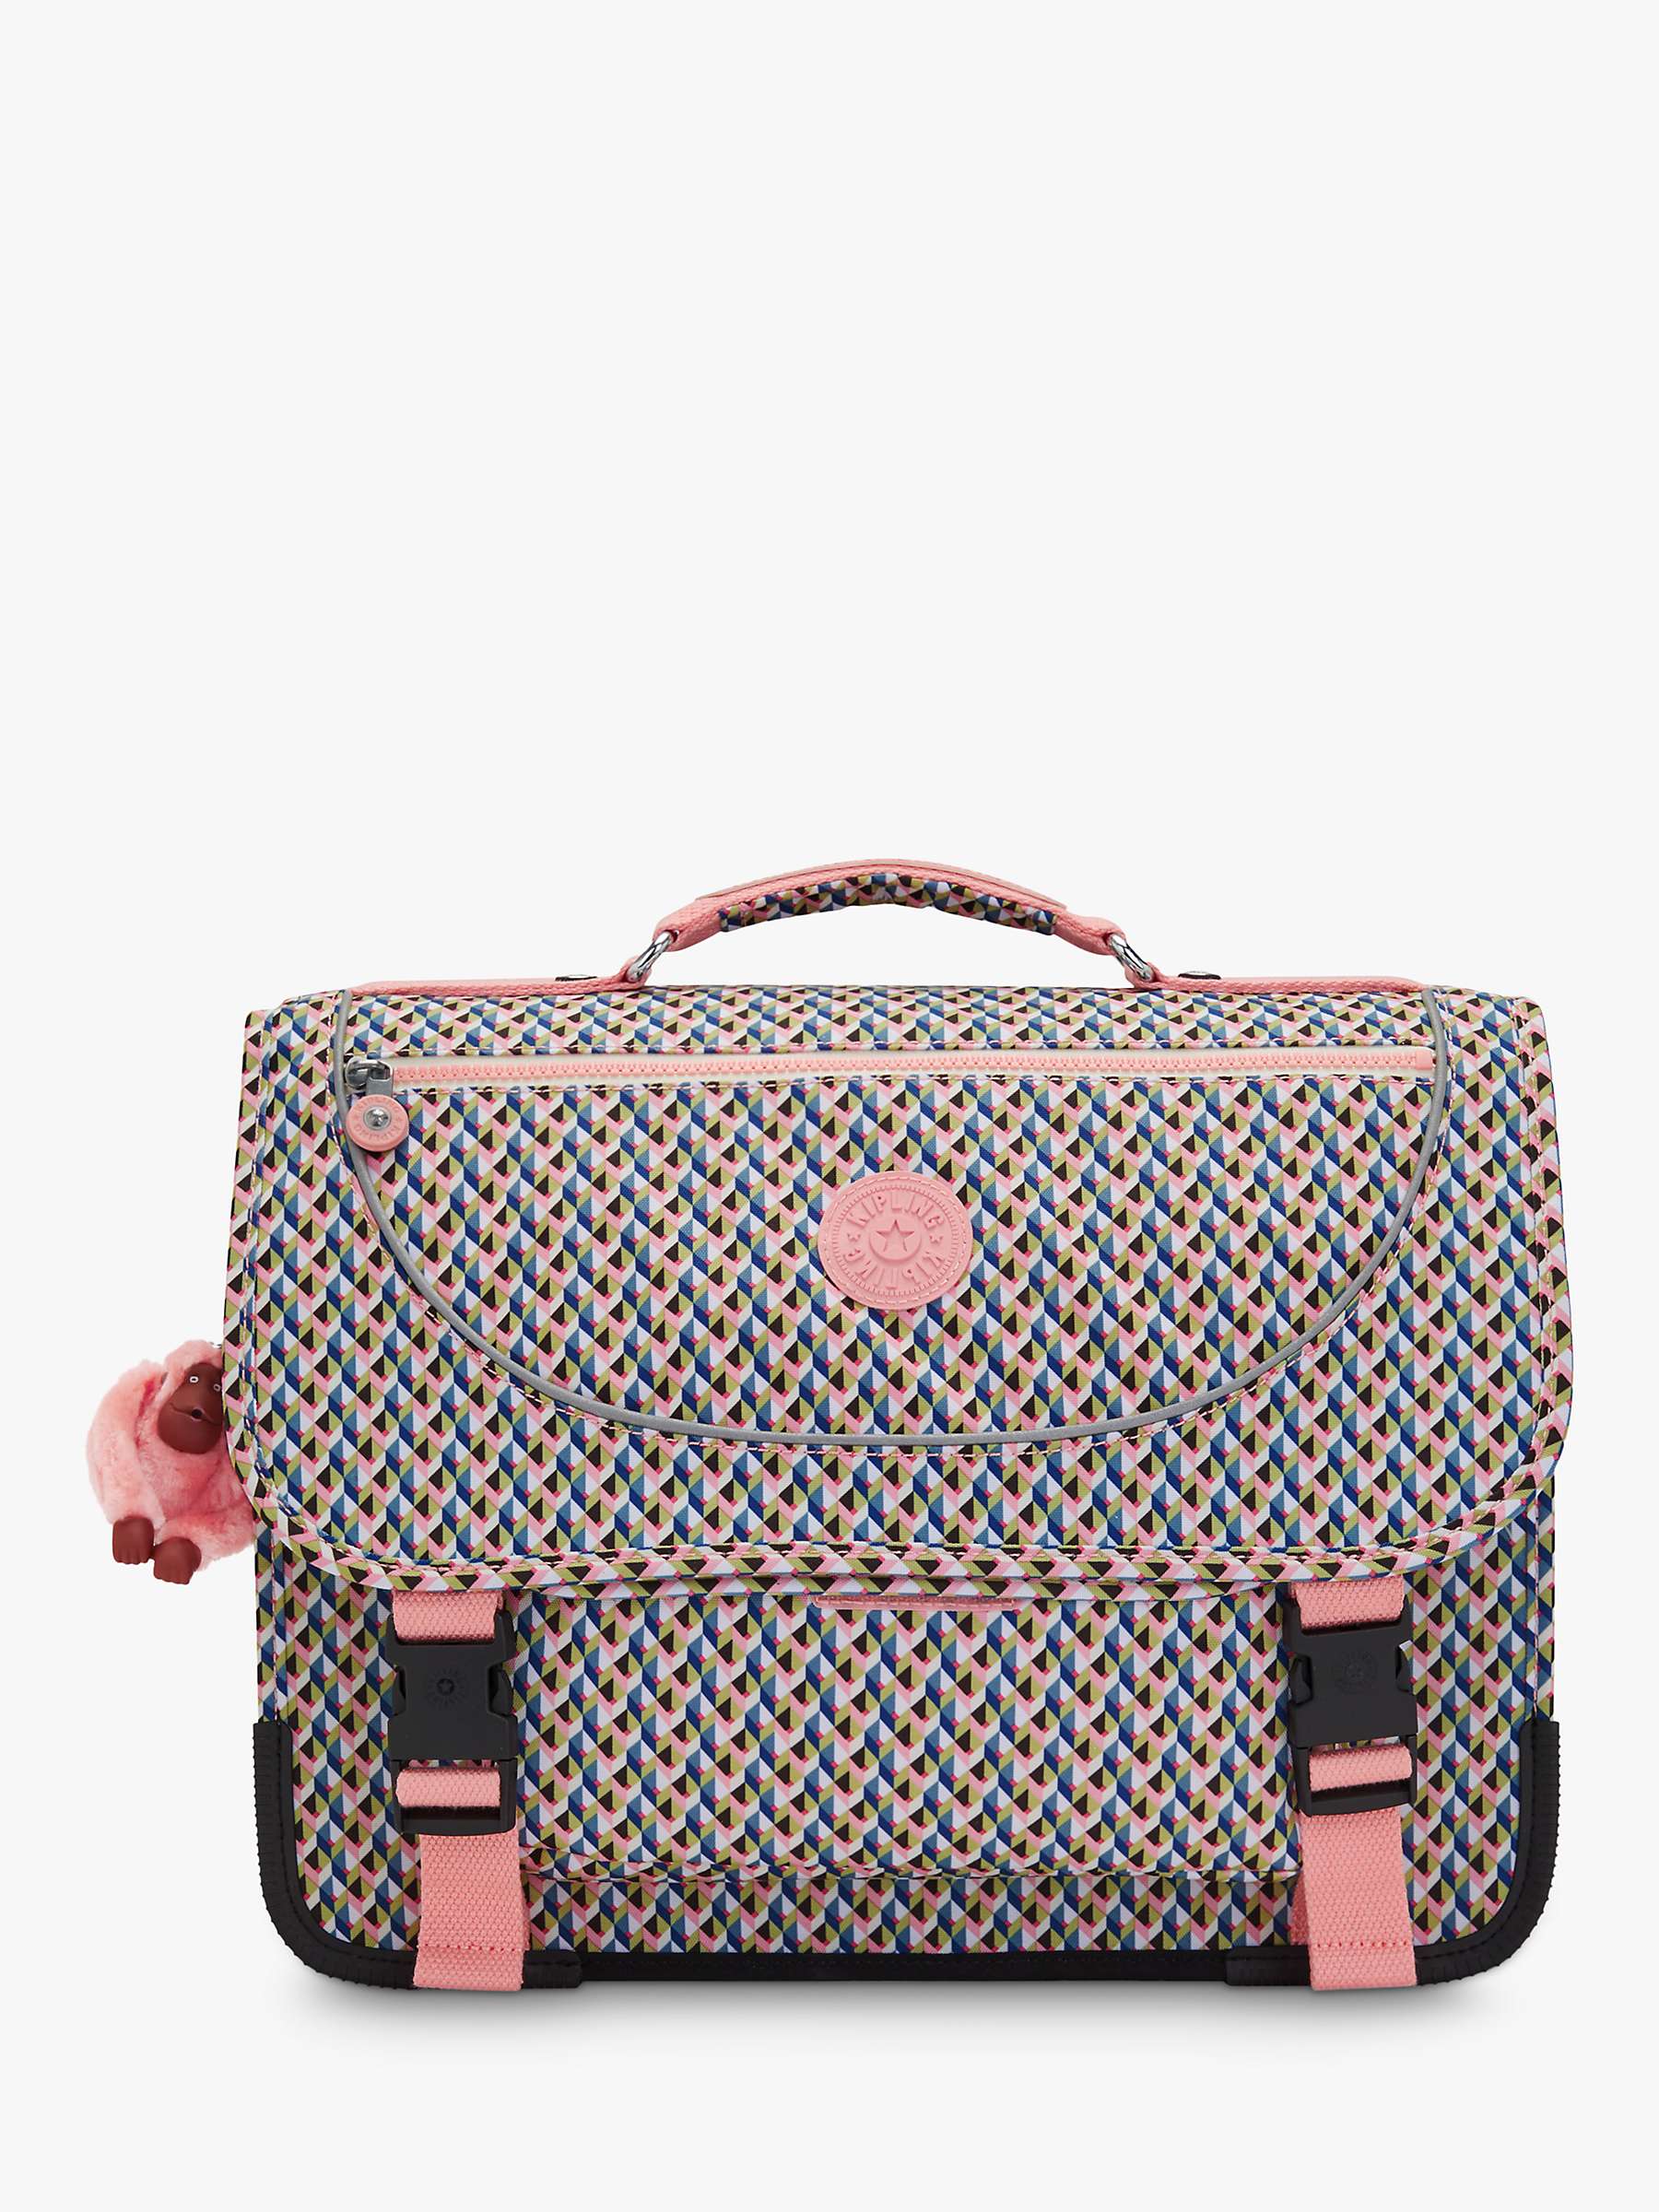 Buy Kipling Kids' Preppy Medium School Backpack, Girly Geo Online at johnlewis.com